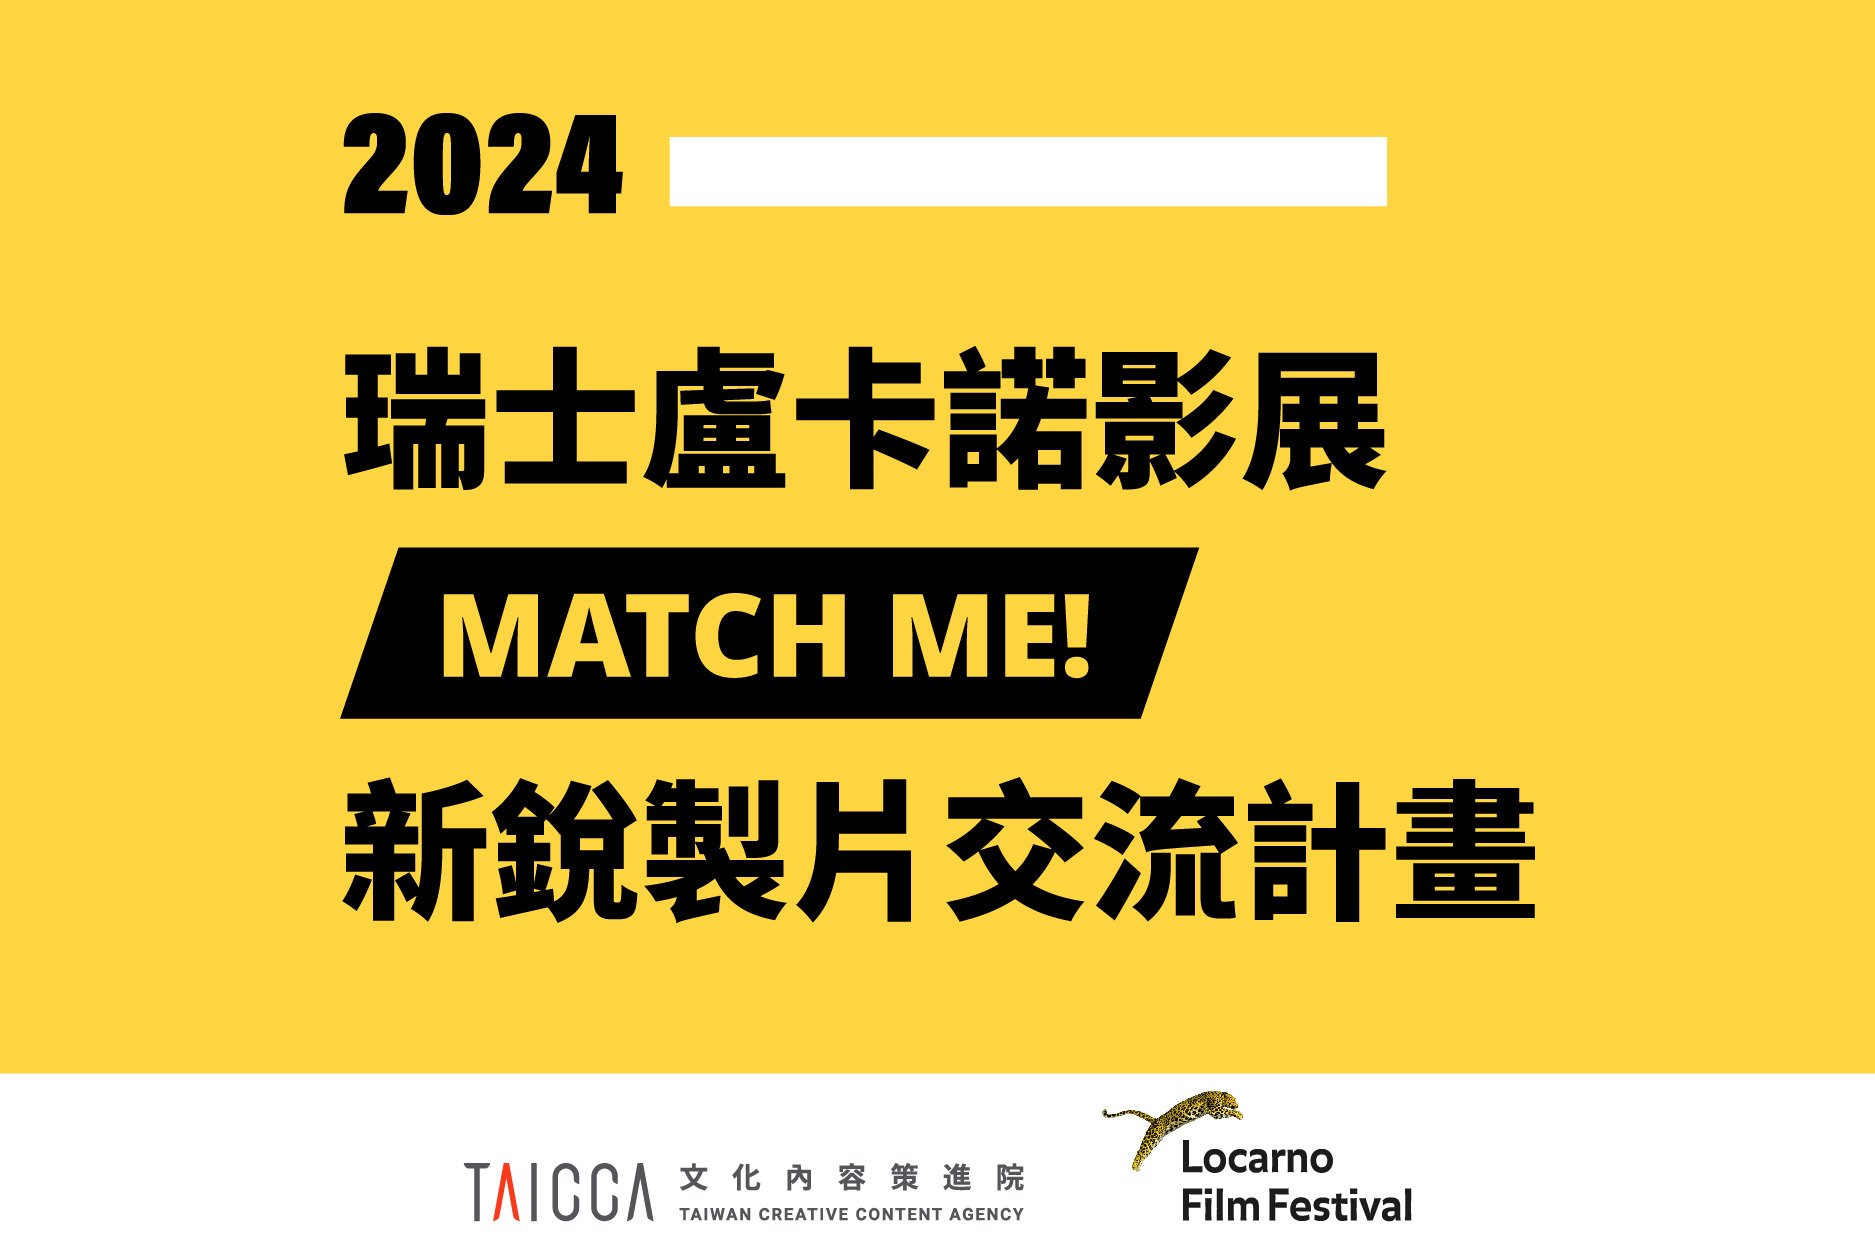 【公開徵求】2024 瑞士盧卡諾影展MATCH ME! 新銳製片交流計畫